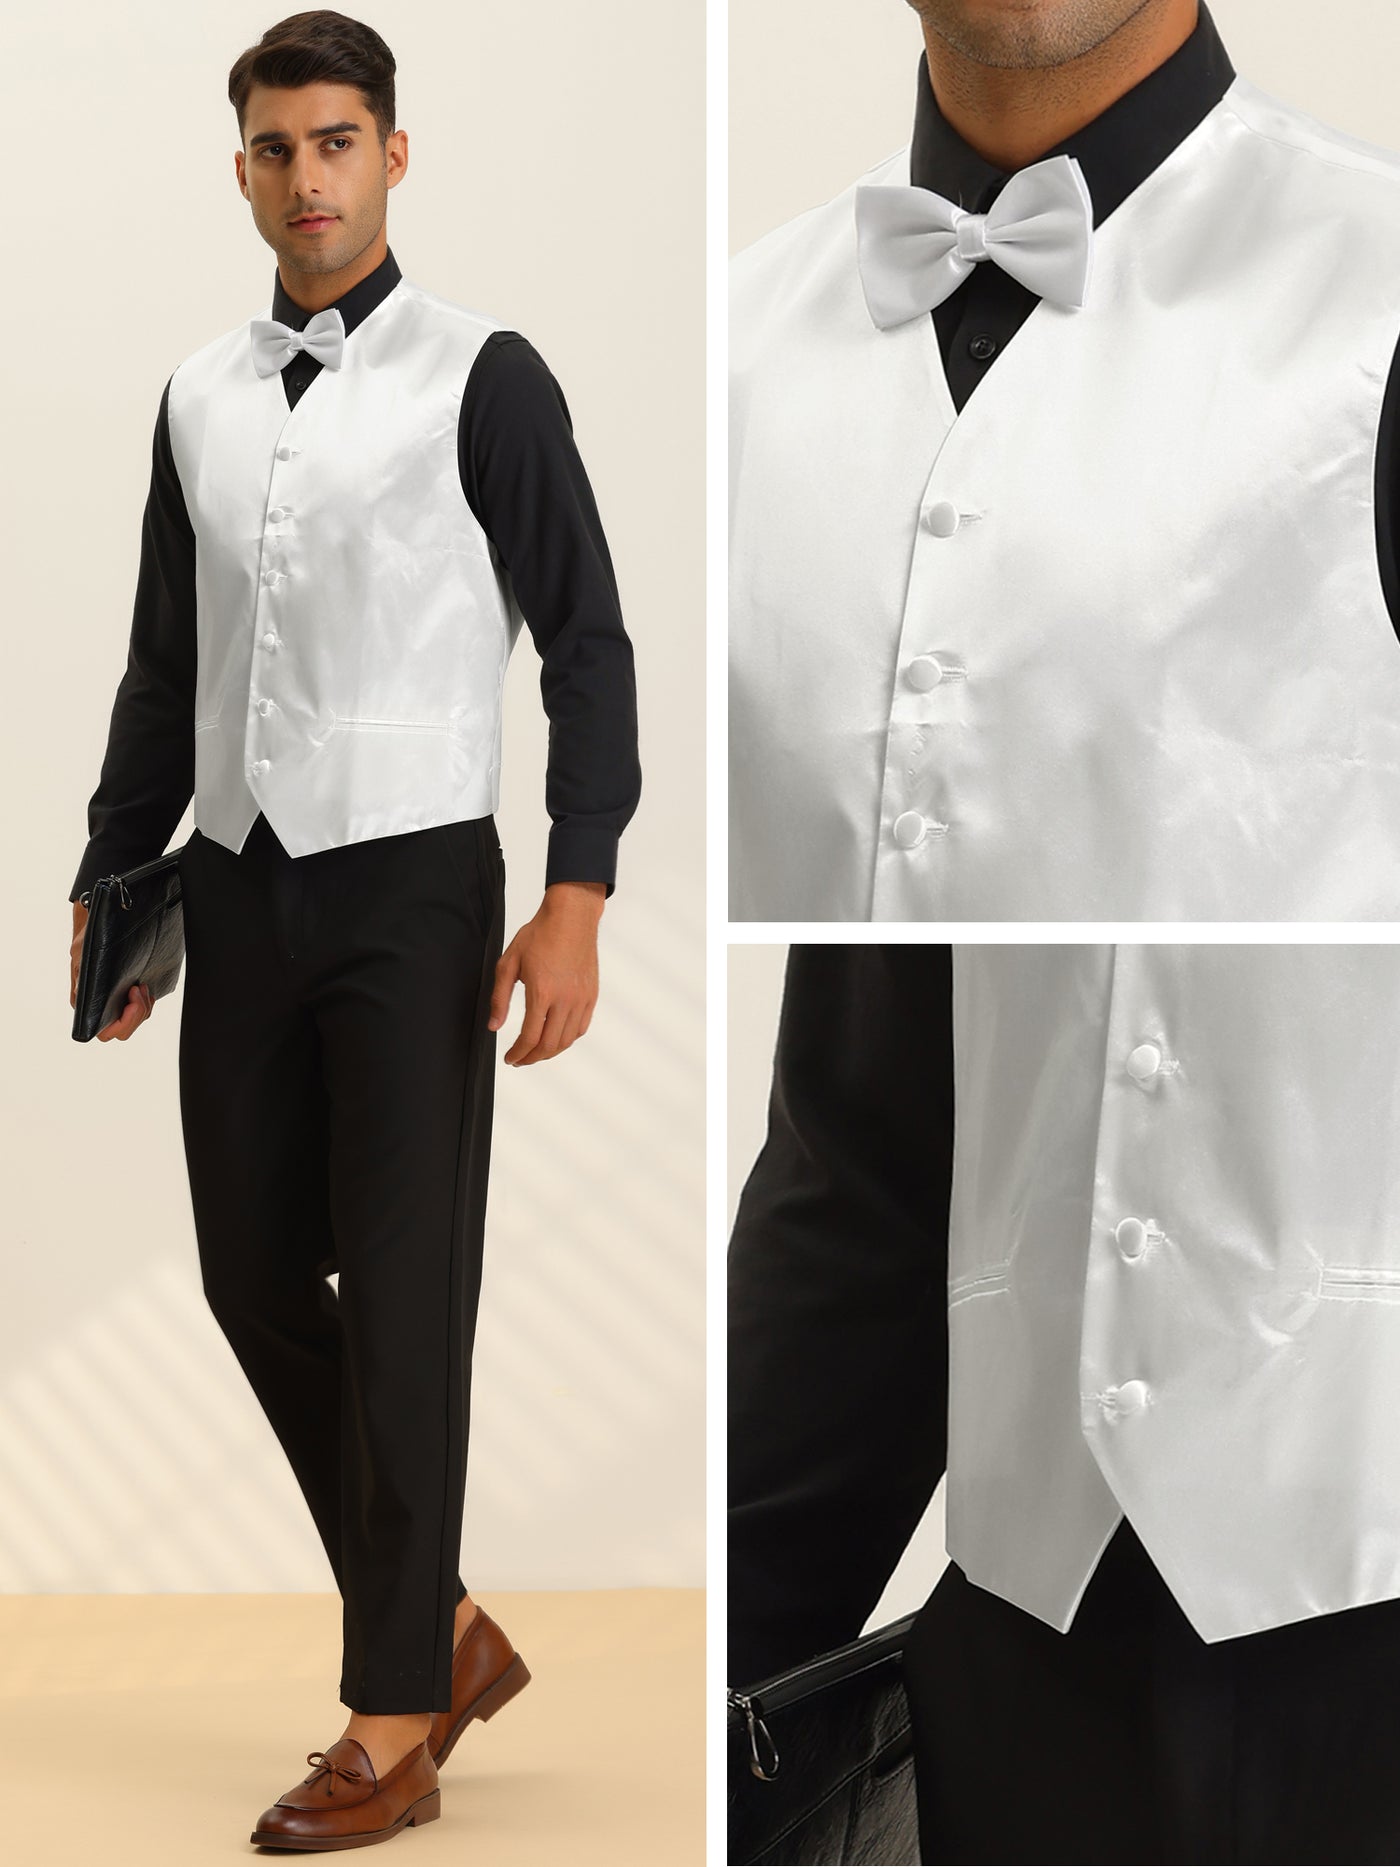 Bublédon Men's Waistcoat Solid Business Wedding Suit Vest with Bow Tie Set